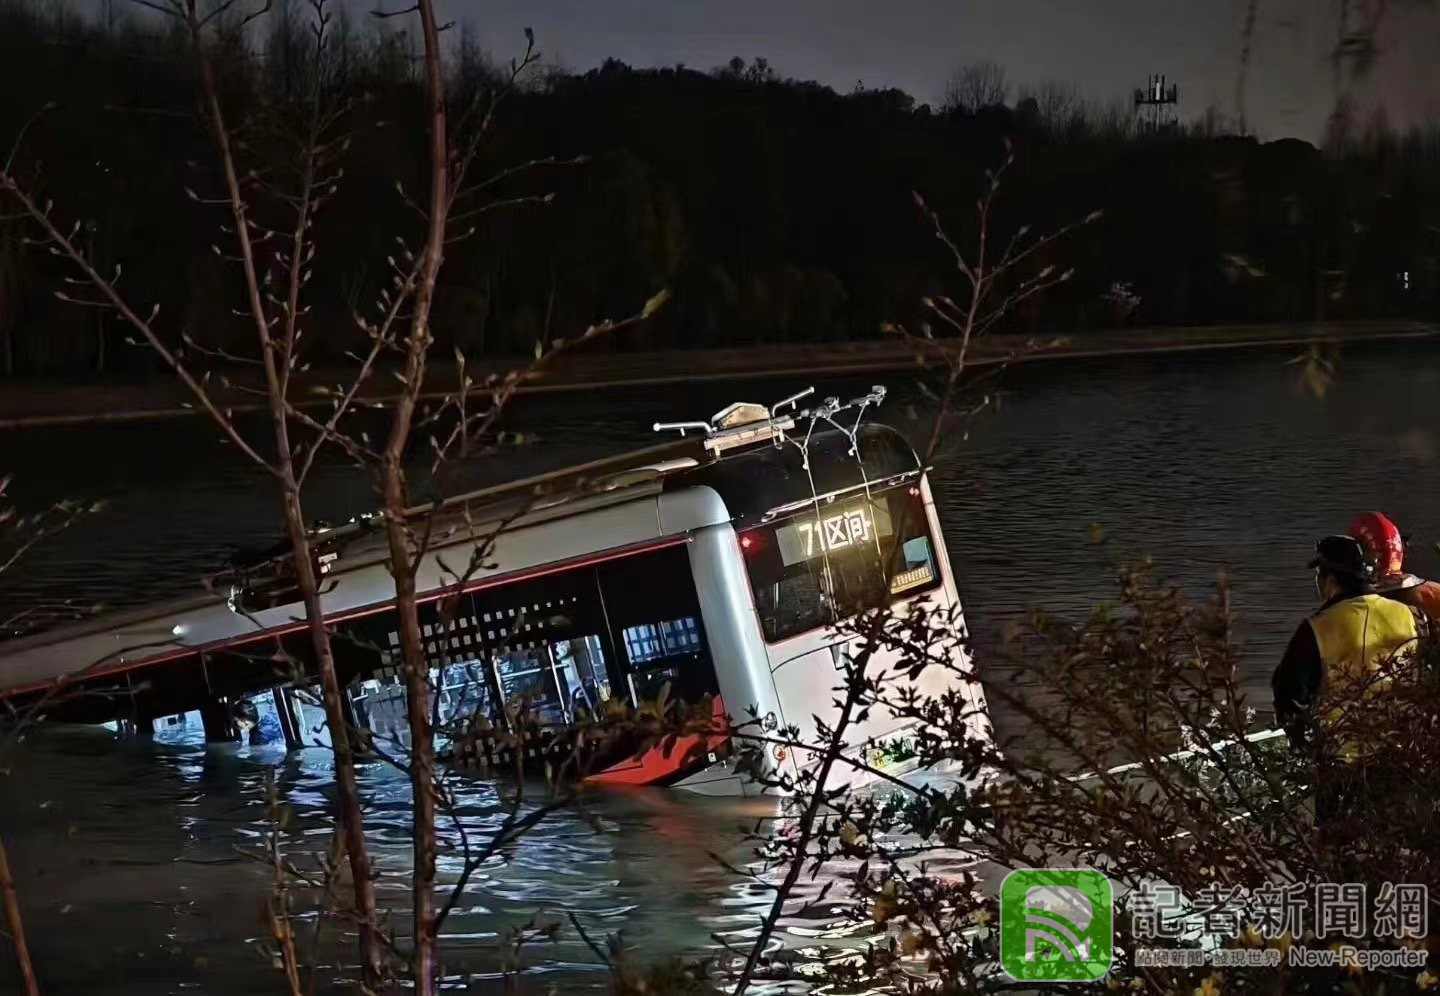 上海公車「失控衝河裡」 司機救出無意識送醫搶救